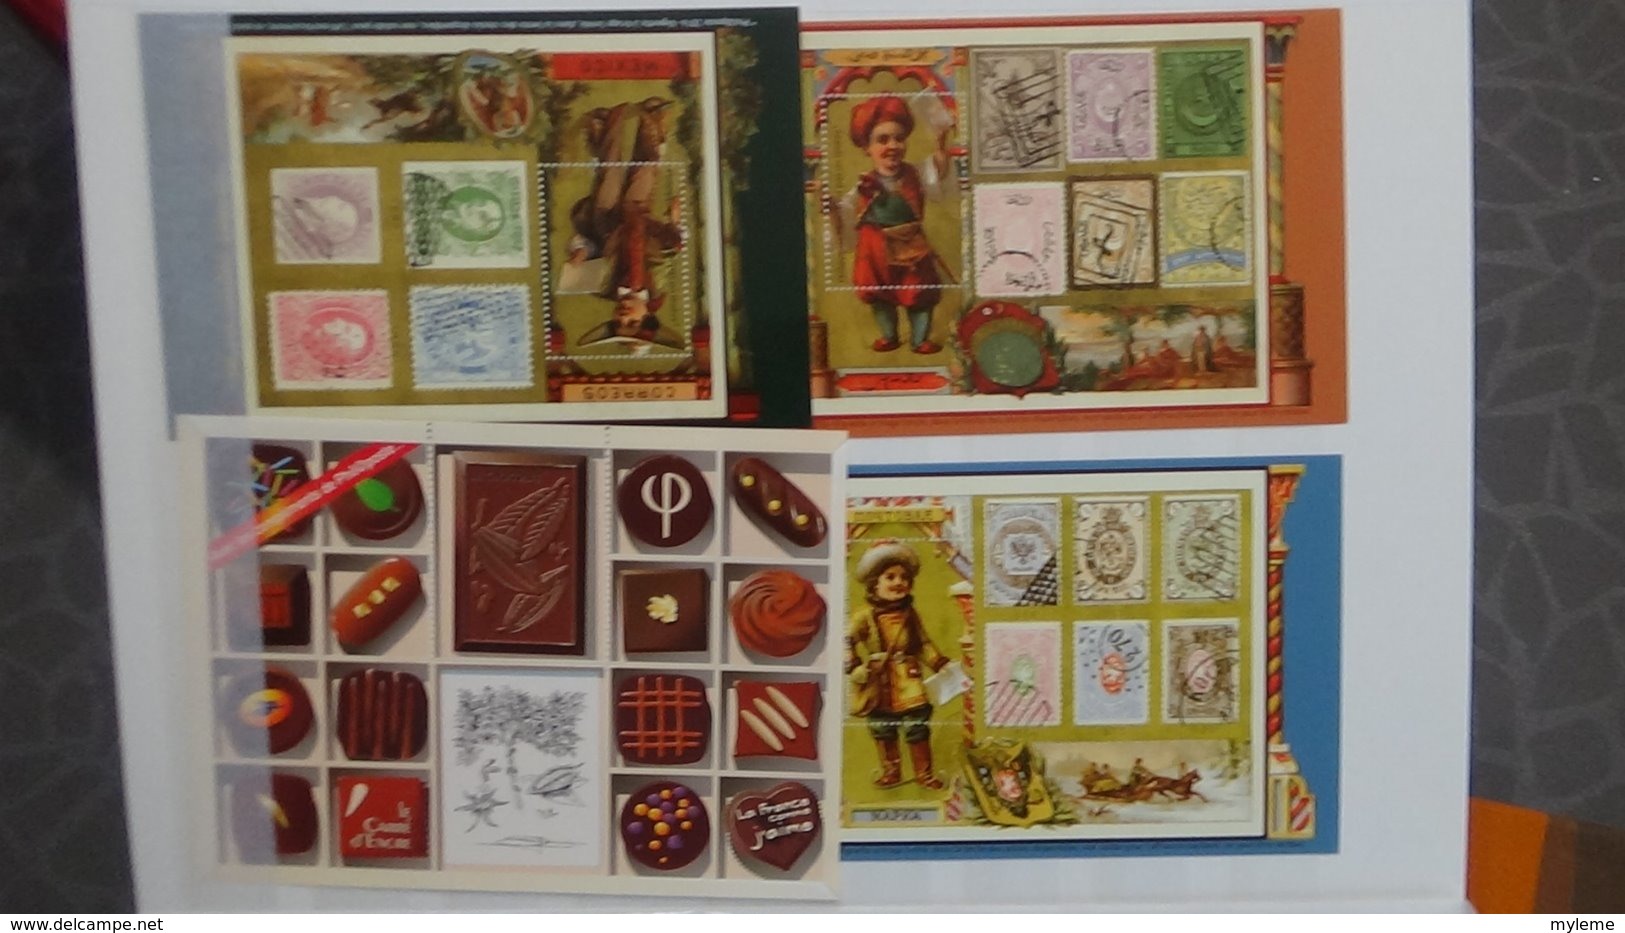 Blocs, bandes, carnets et timbres personnalisés oblitérés de France. Bel ensemble dont oblitération 1er jour.